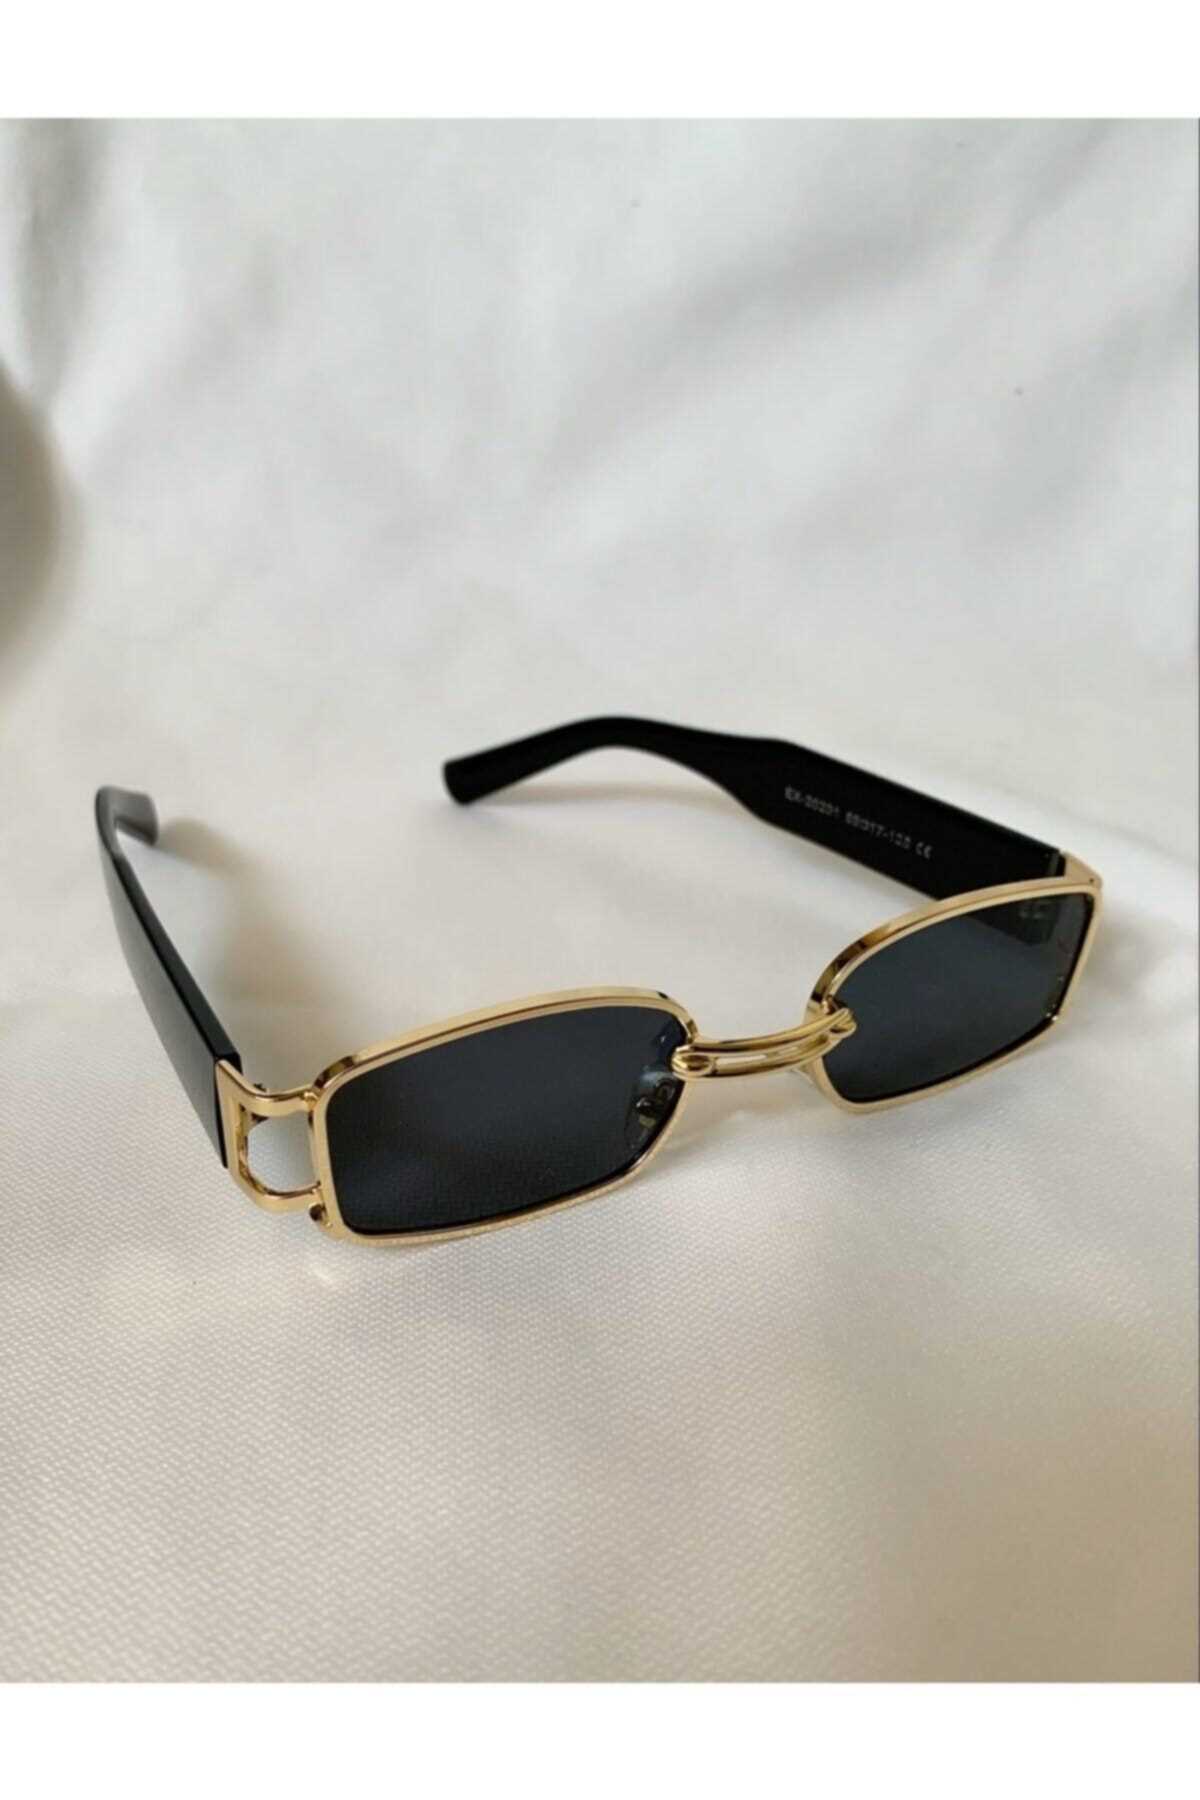 خرید انلاین عینک آفتابی زنانه ترکیه برند Klotho Accessories رنگ مشکی کد ty103149906